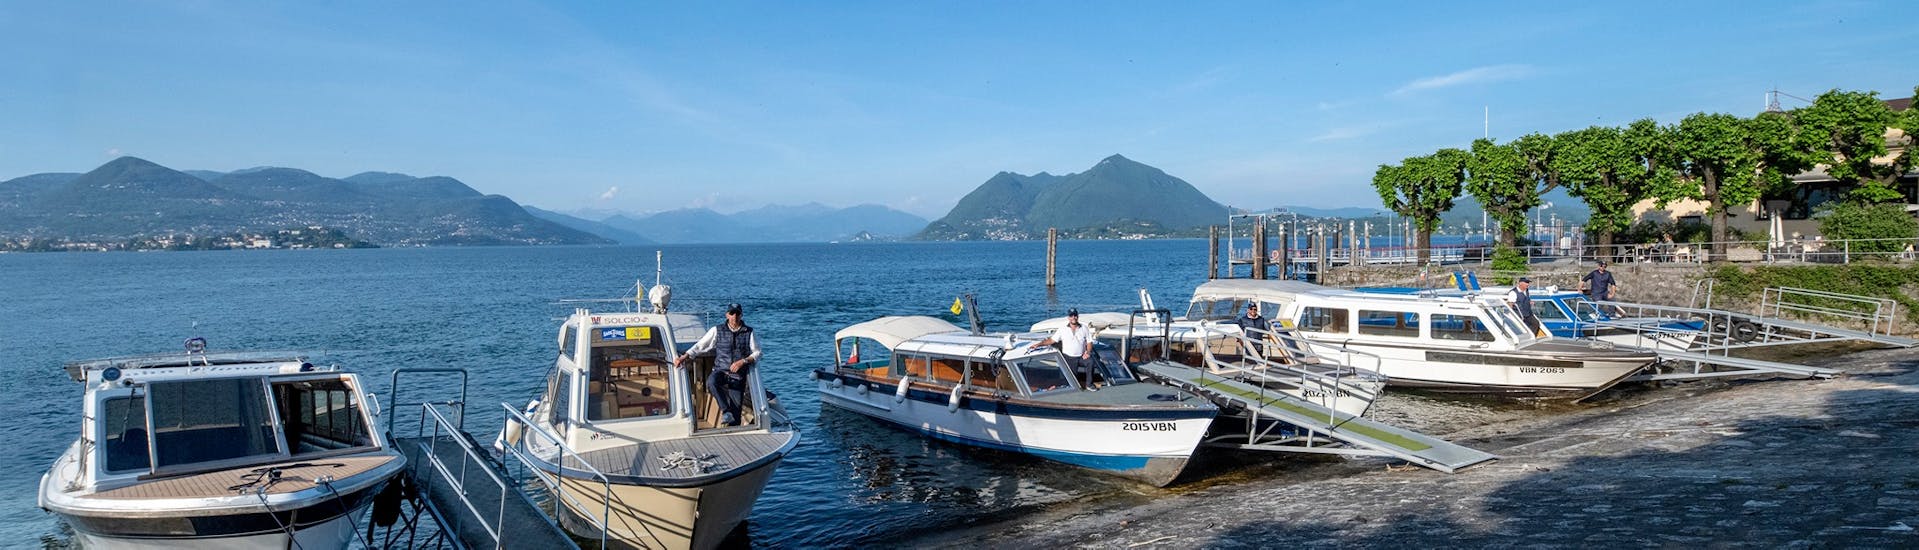 Uitzicht op de boten die gebruikt worden voor de Boot Transfer van Stresa naar Isola Madre, Isola Pescatori en Isola Bella met Lake Tours Stresa.